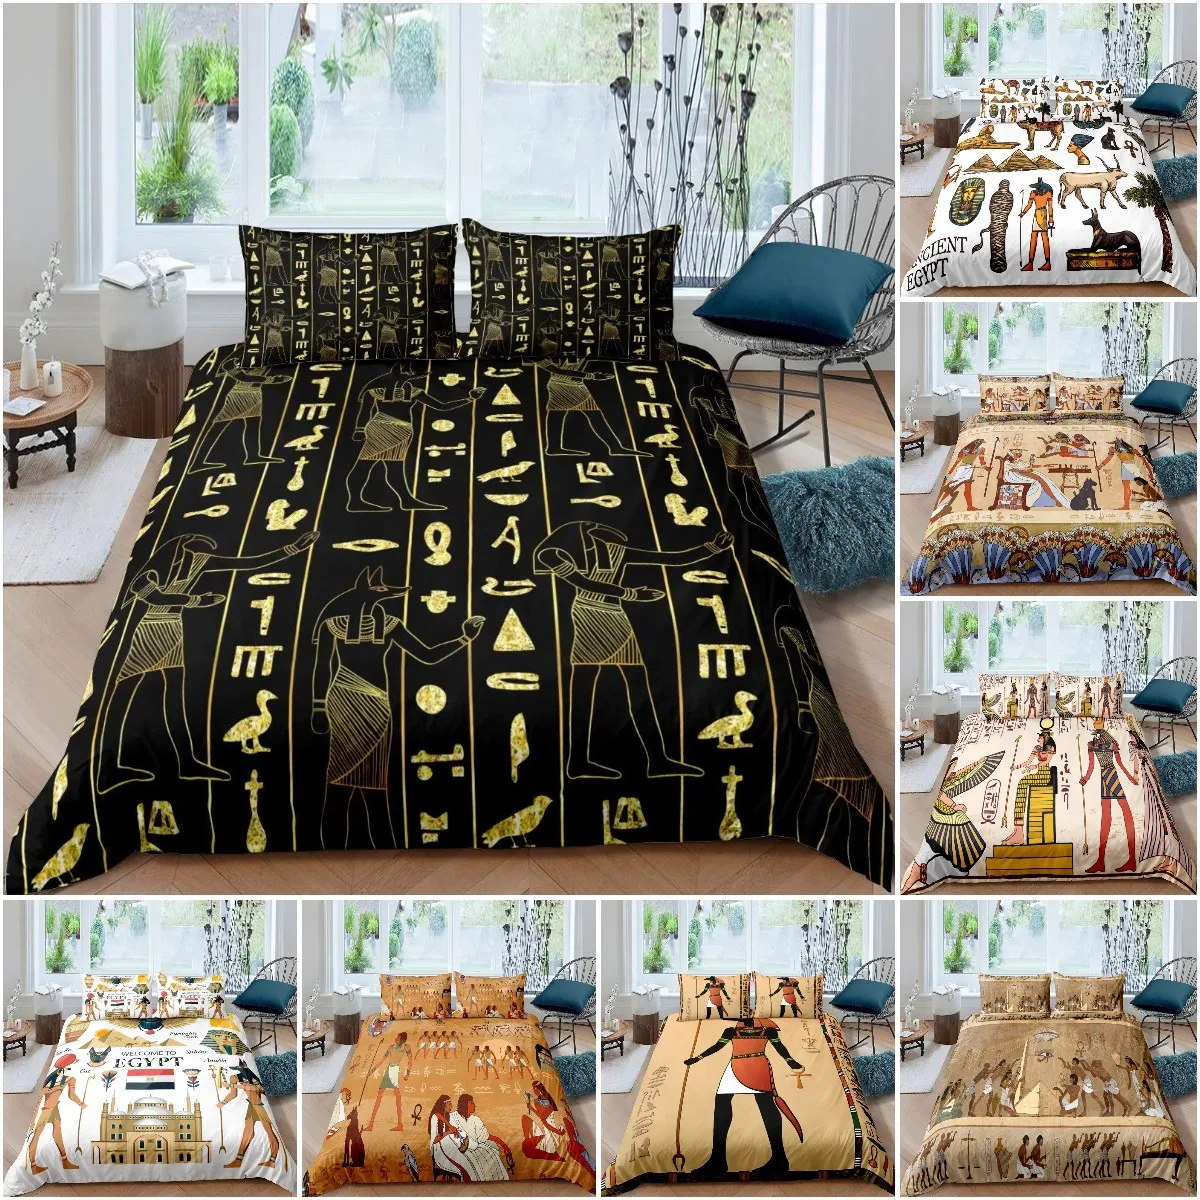 

Juego de funda de edredón con símbolo egipcio, ropa de cama de tamaño Queen, retro, Faraón,pirámide, bohemio, Tribal, 2/3 piezas